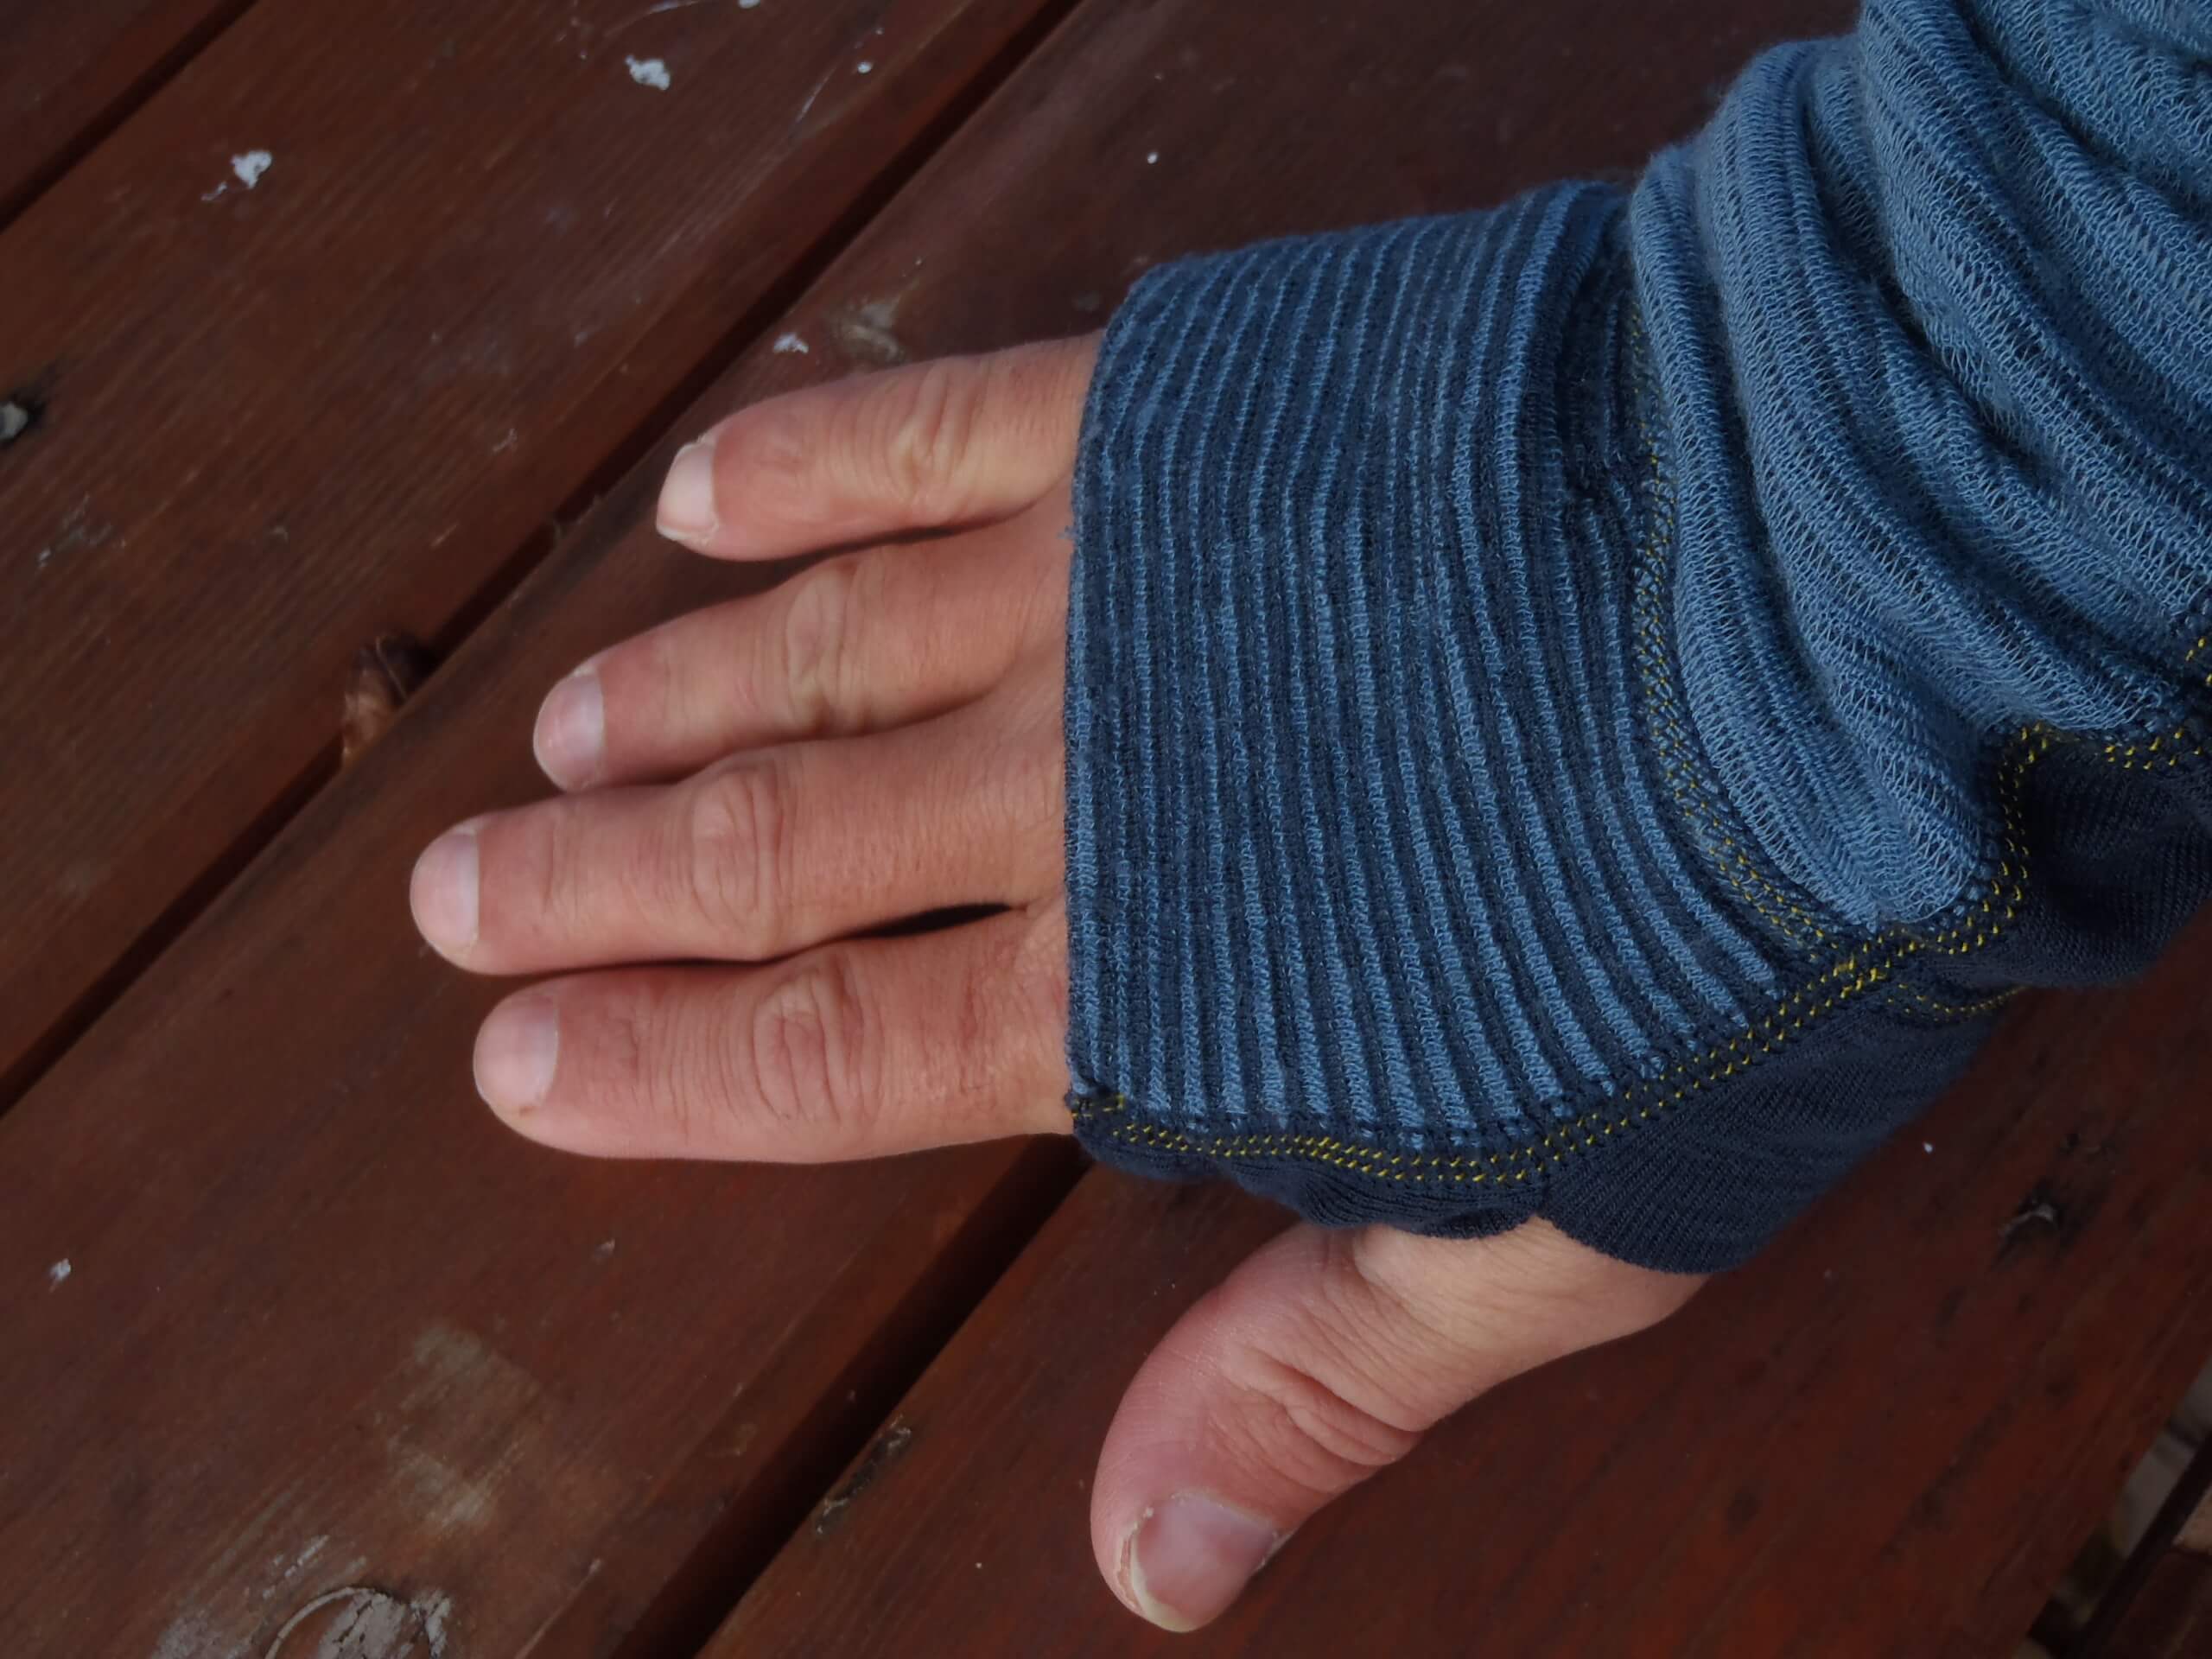 Kompletně chráněný hřbet ruky rukávem trika Devold Tuvegga Sport Air.